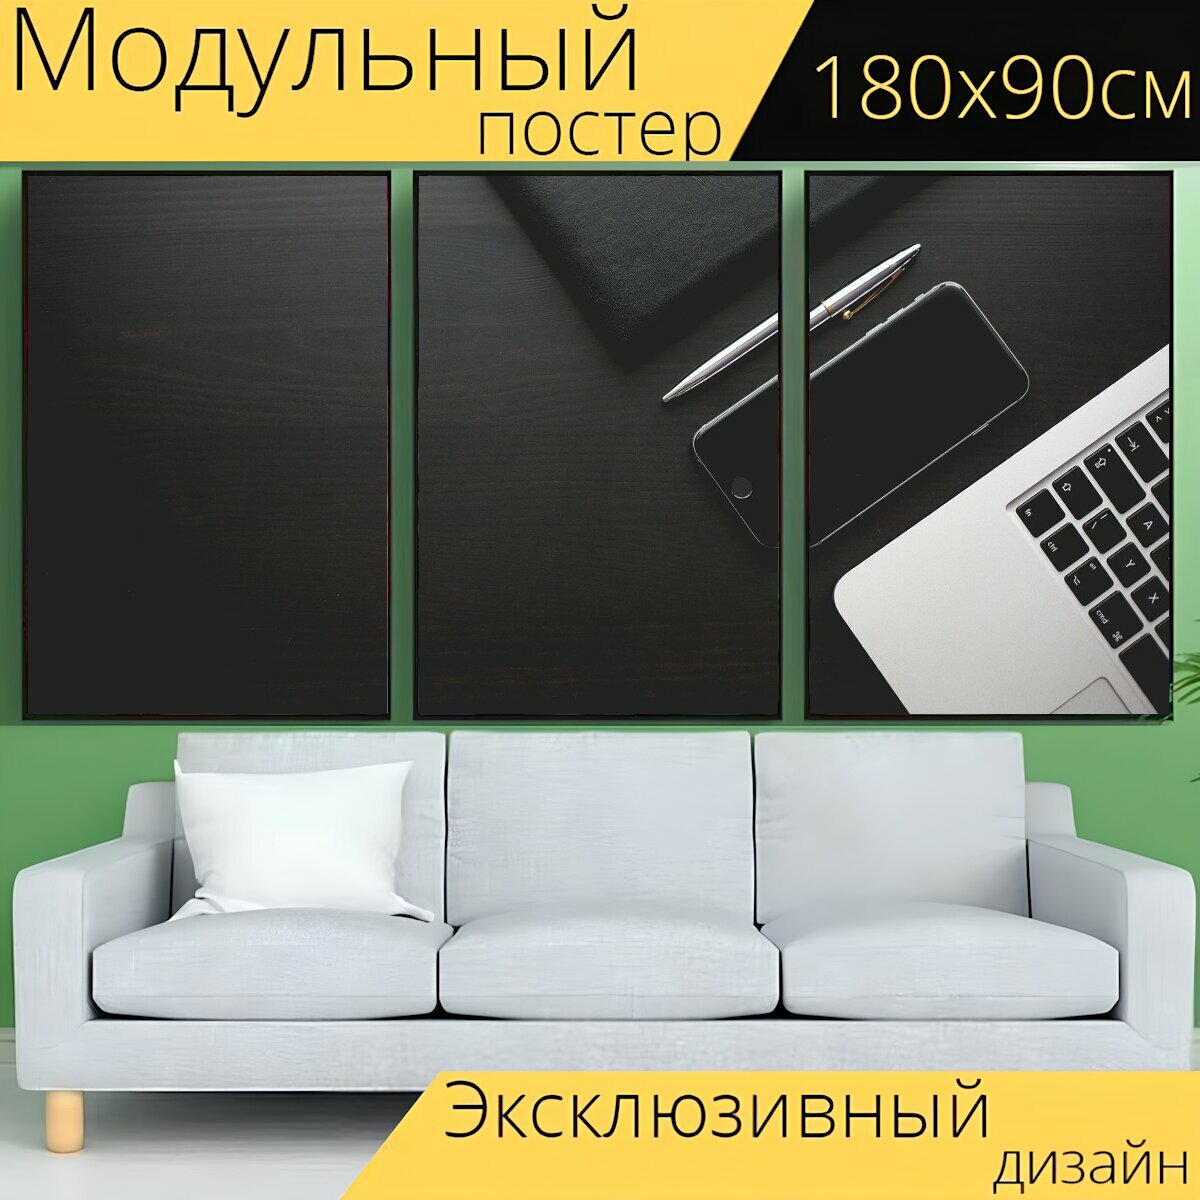 Модульный постер "Офис, стол письменный, смартфон" 180 x 90 см. для интерьера